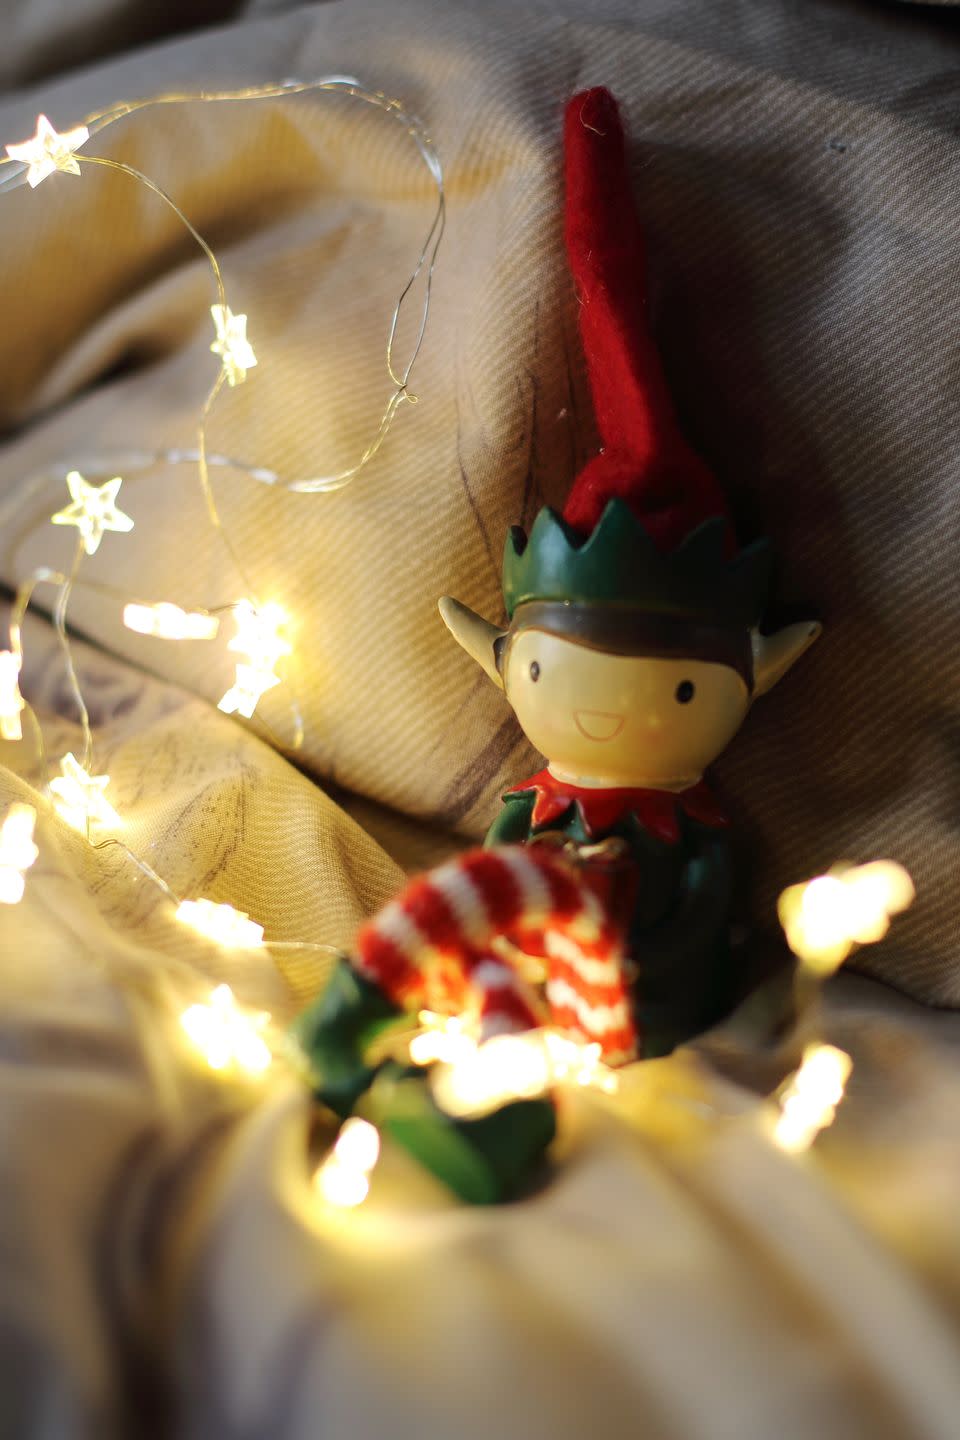 4) Bedtime Elf